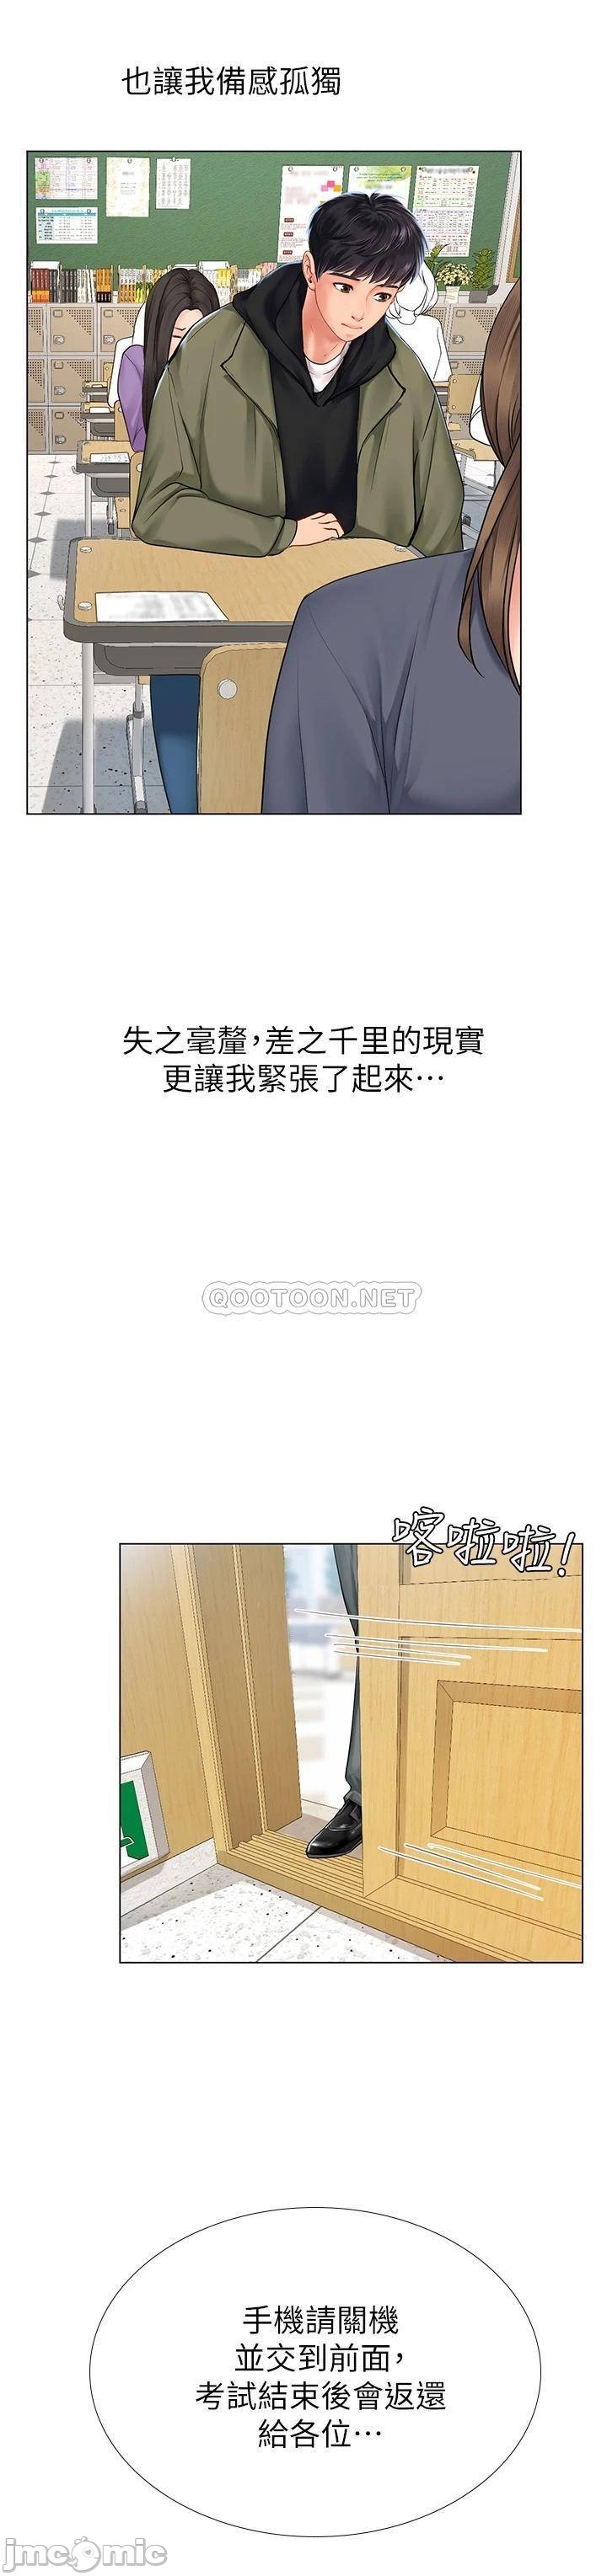 The image Should I Study At Noryangjin Raw - Chapter 86 - 00041588316745bae76fc - ManhwaManga.io